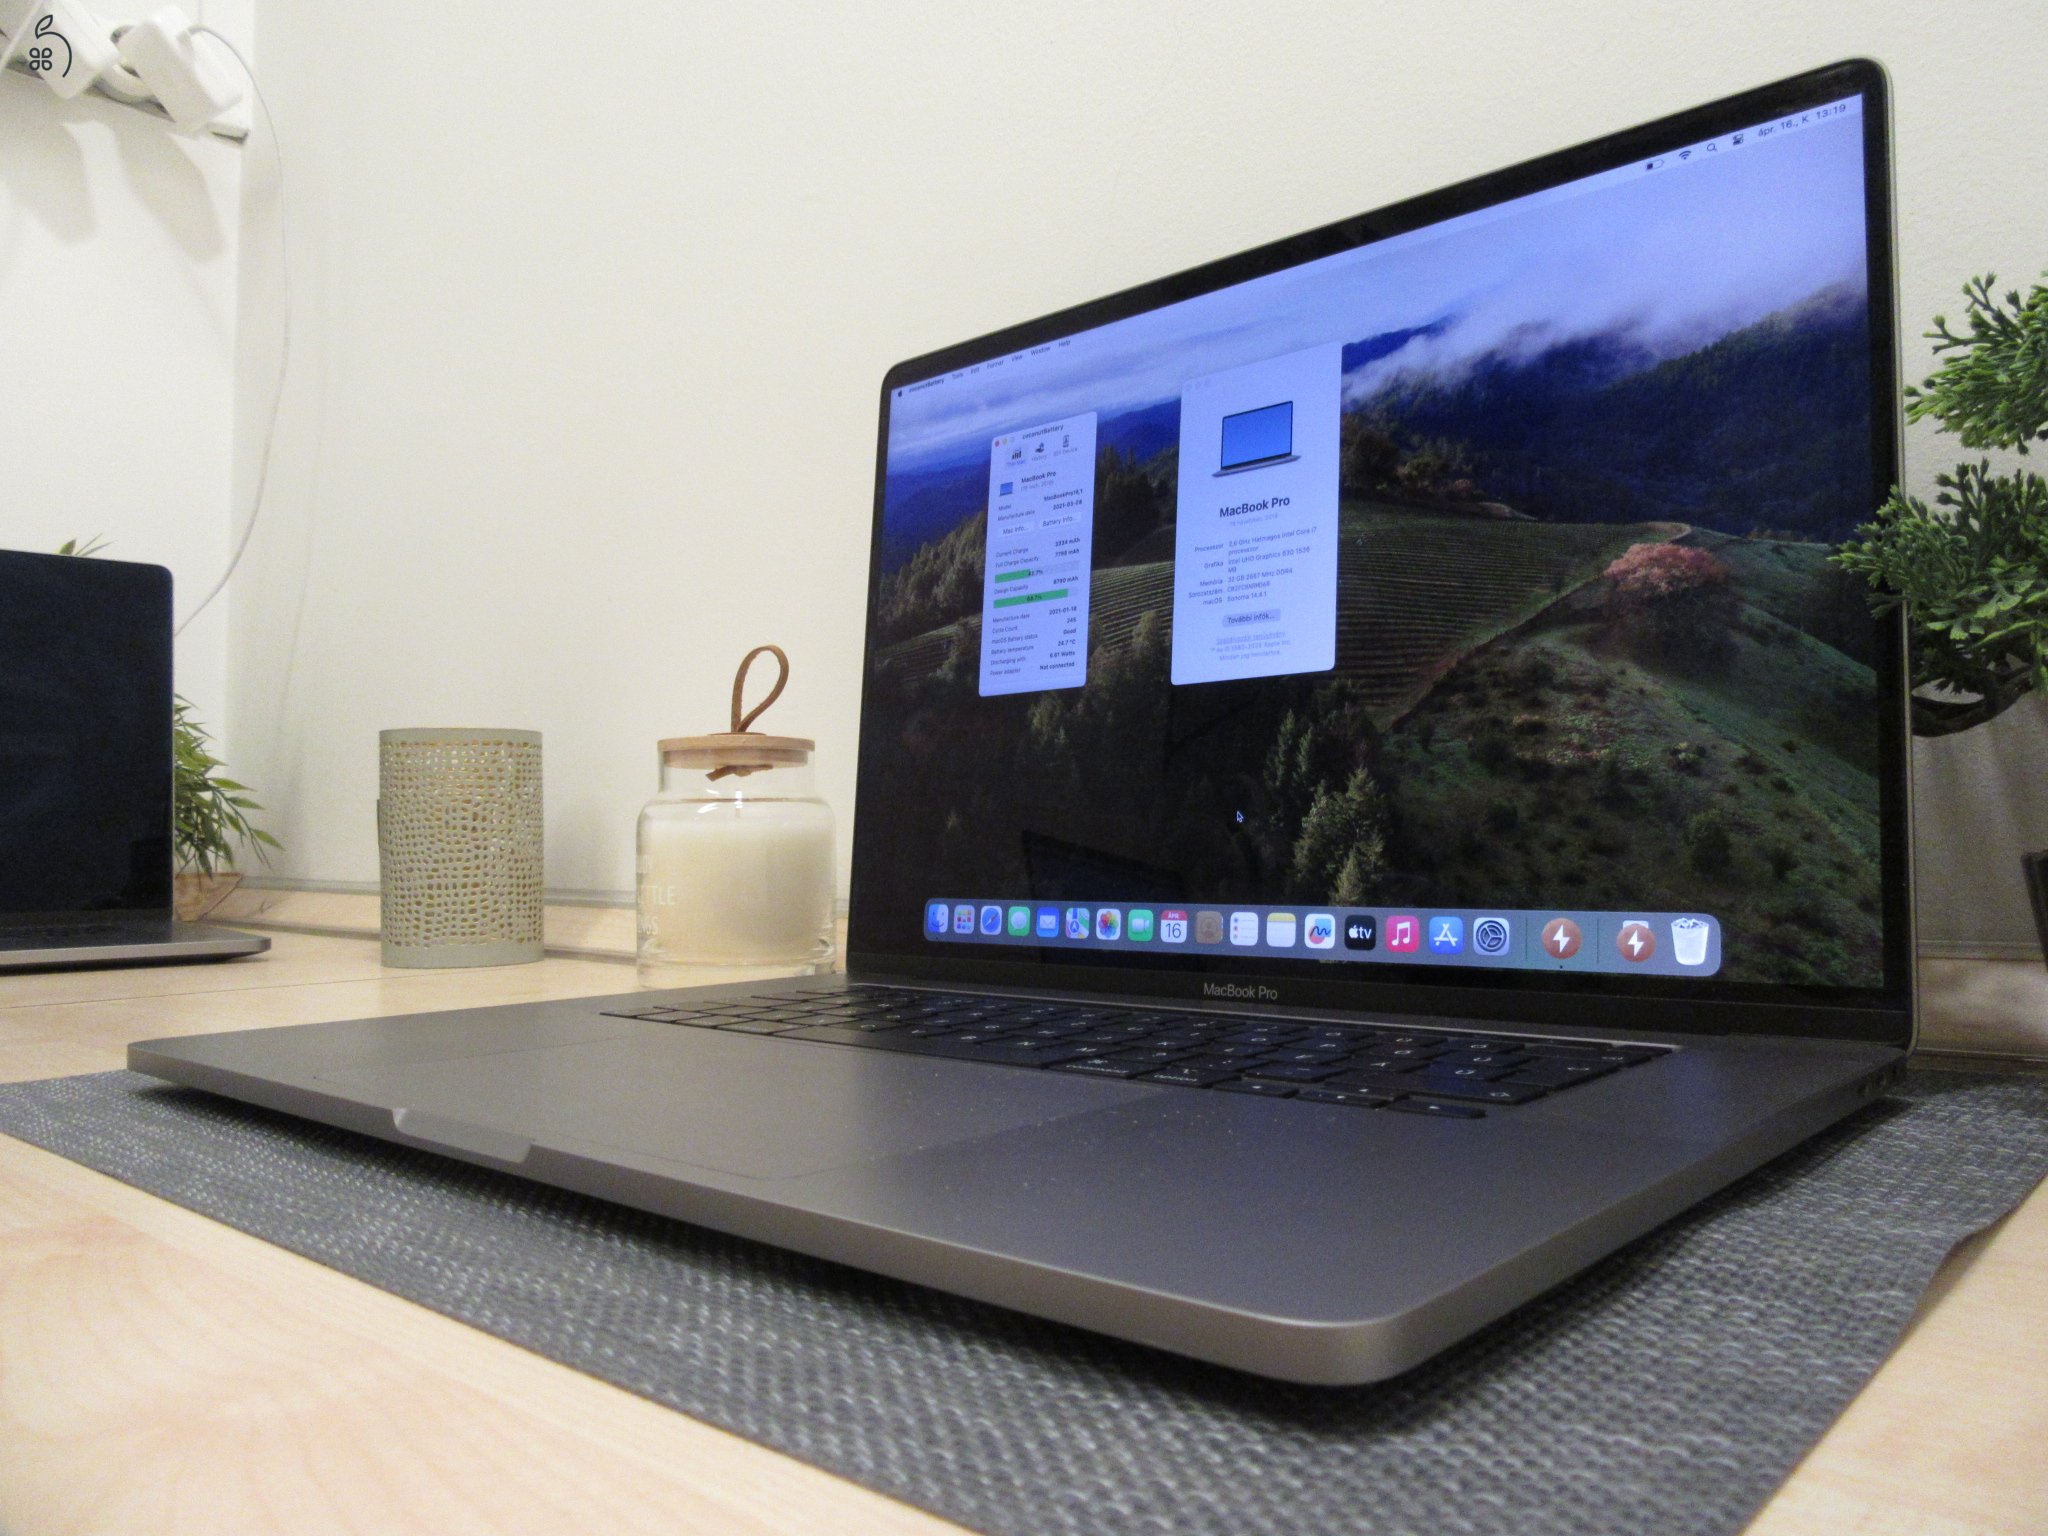  Apple Retina Macbook Pro 16 - 2019 - Használt, karcmentes 